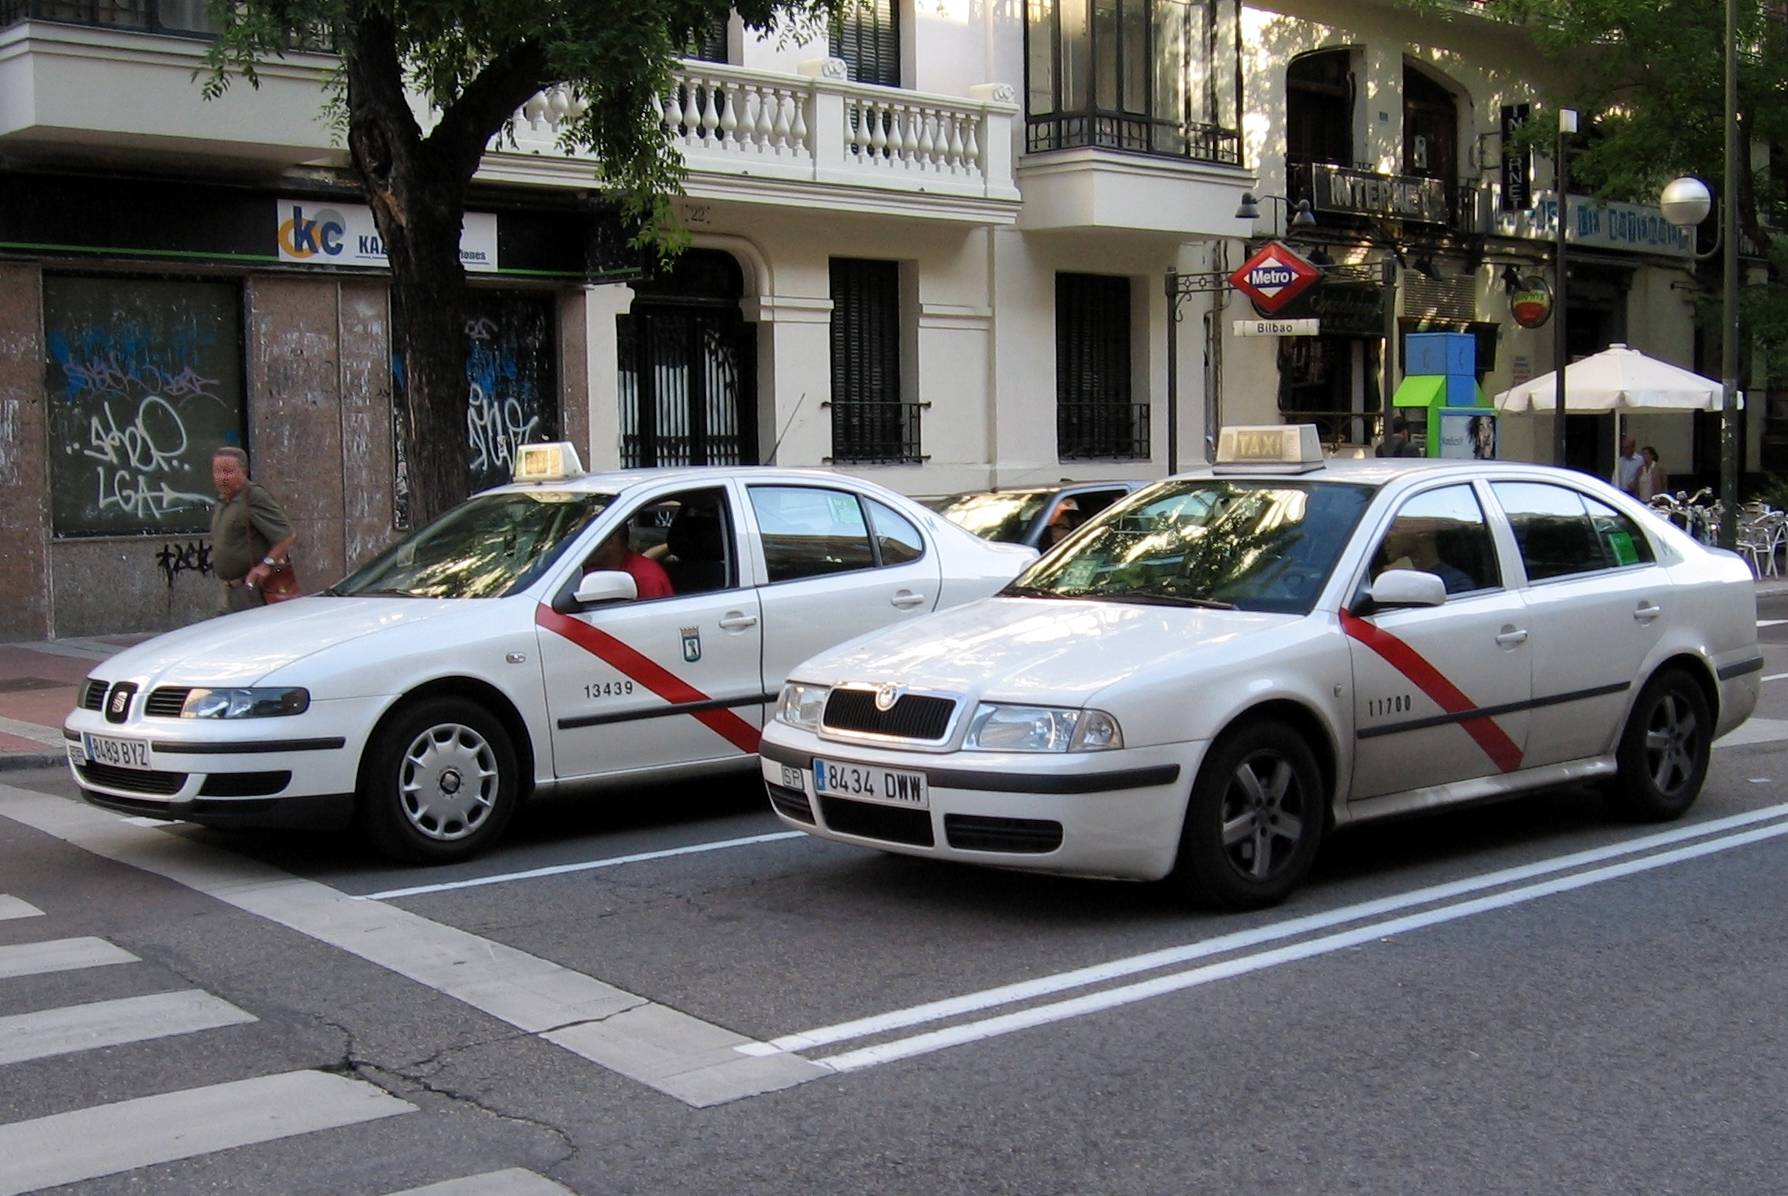 такси в испании